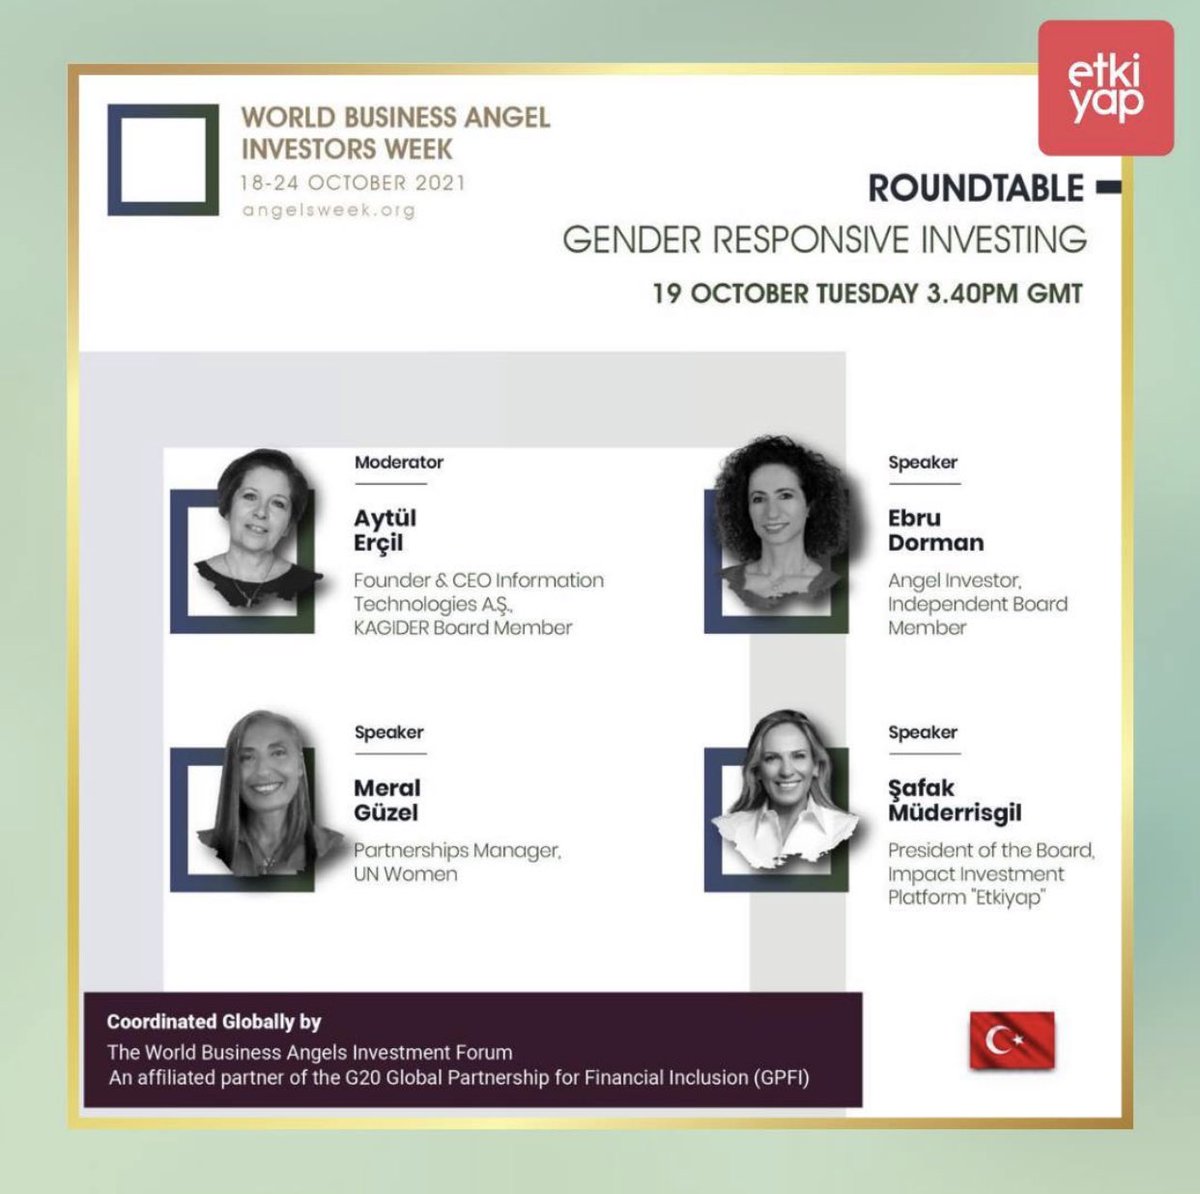 Konu:Toplumsal Cinsiyet Eşitliğine Duyarlı Yatırımlar @wbaforum ve @kagider in davetiyle üç değerli kadın liderle buluşuyorum. #genderresponsiveinvesting #genderlens #angelinvestment #angelsweek